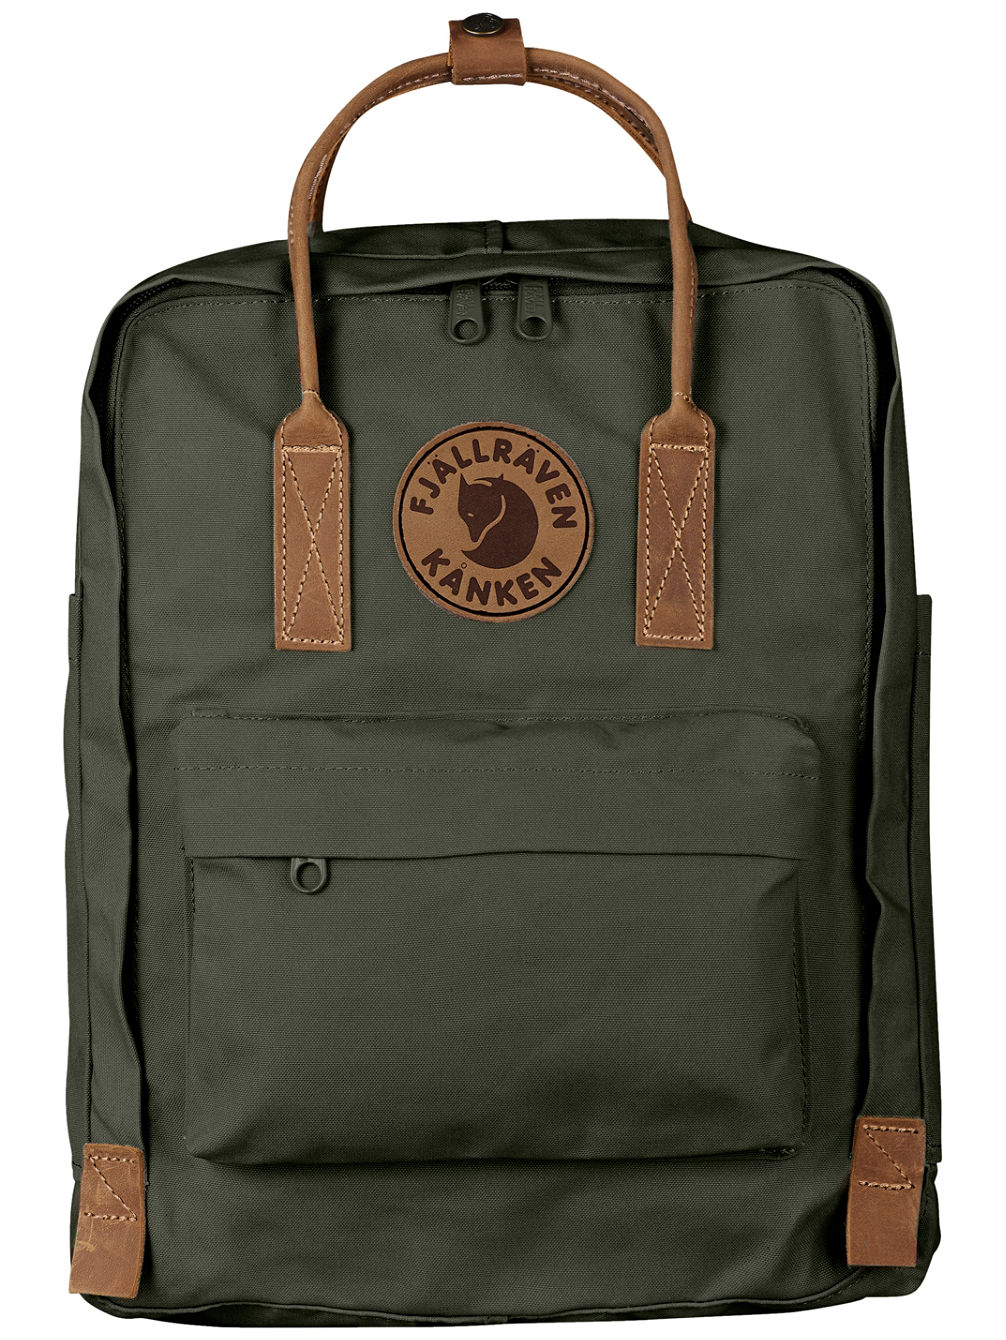 Kanken No. 2 Backpack